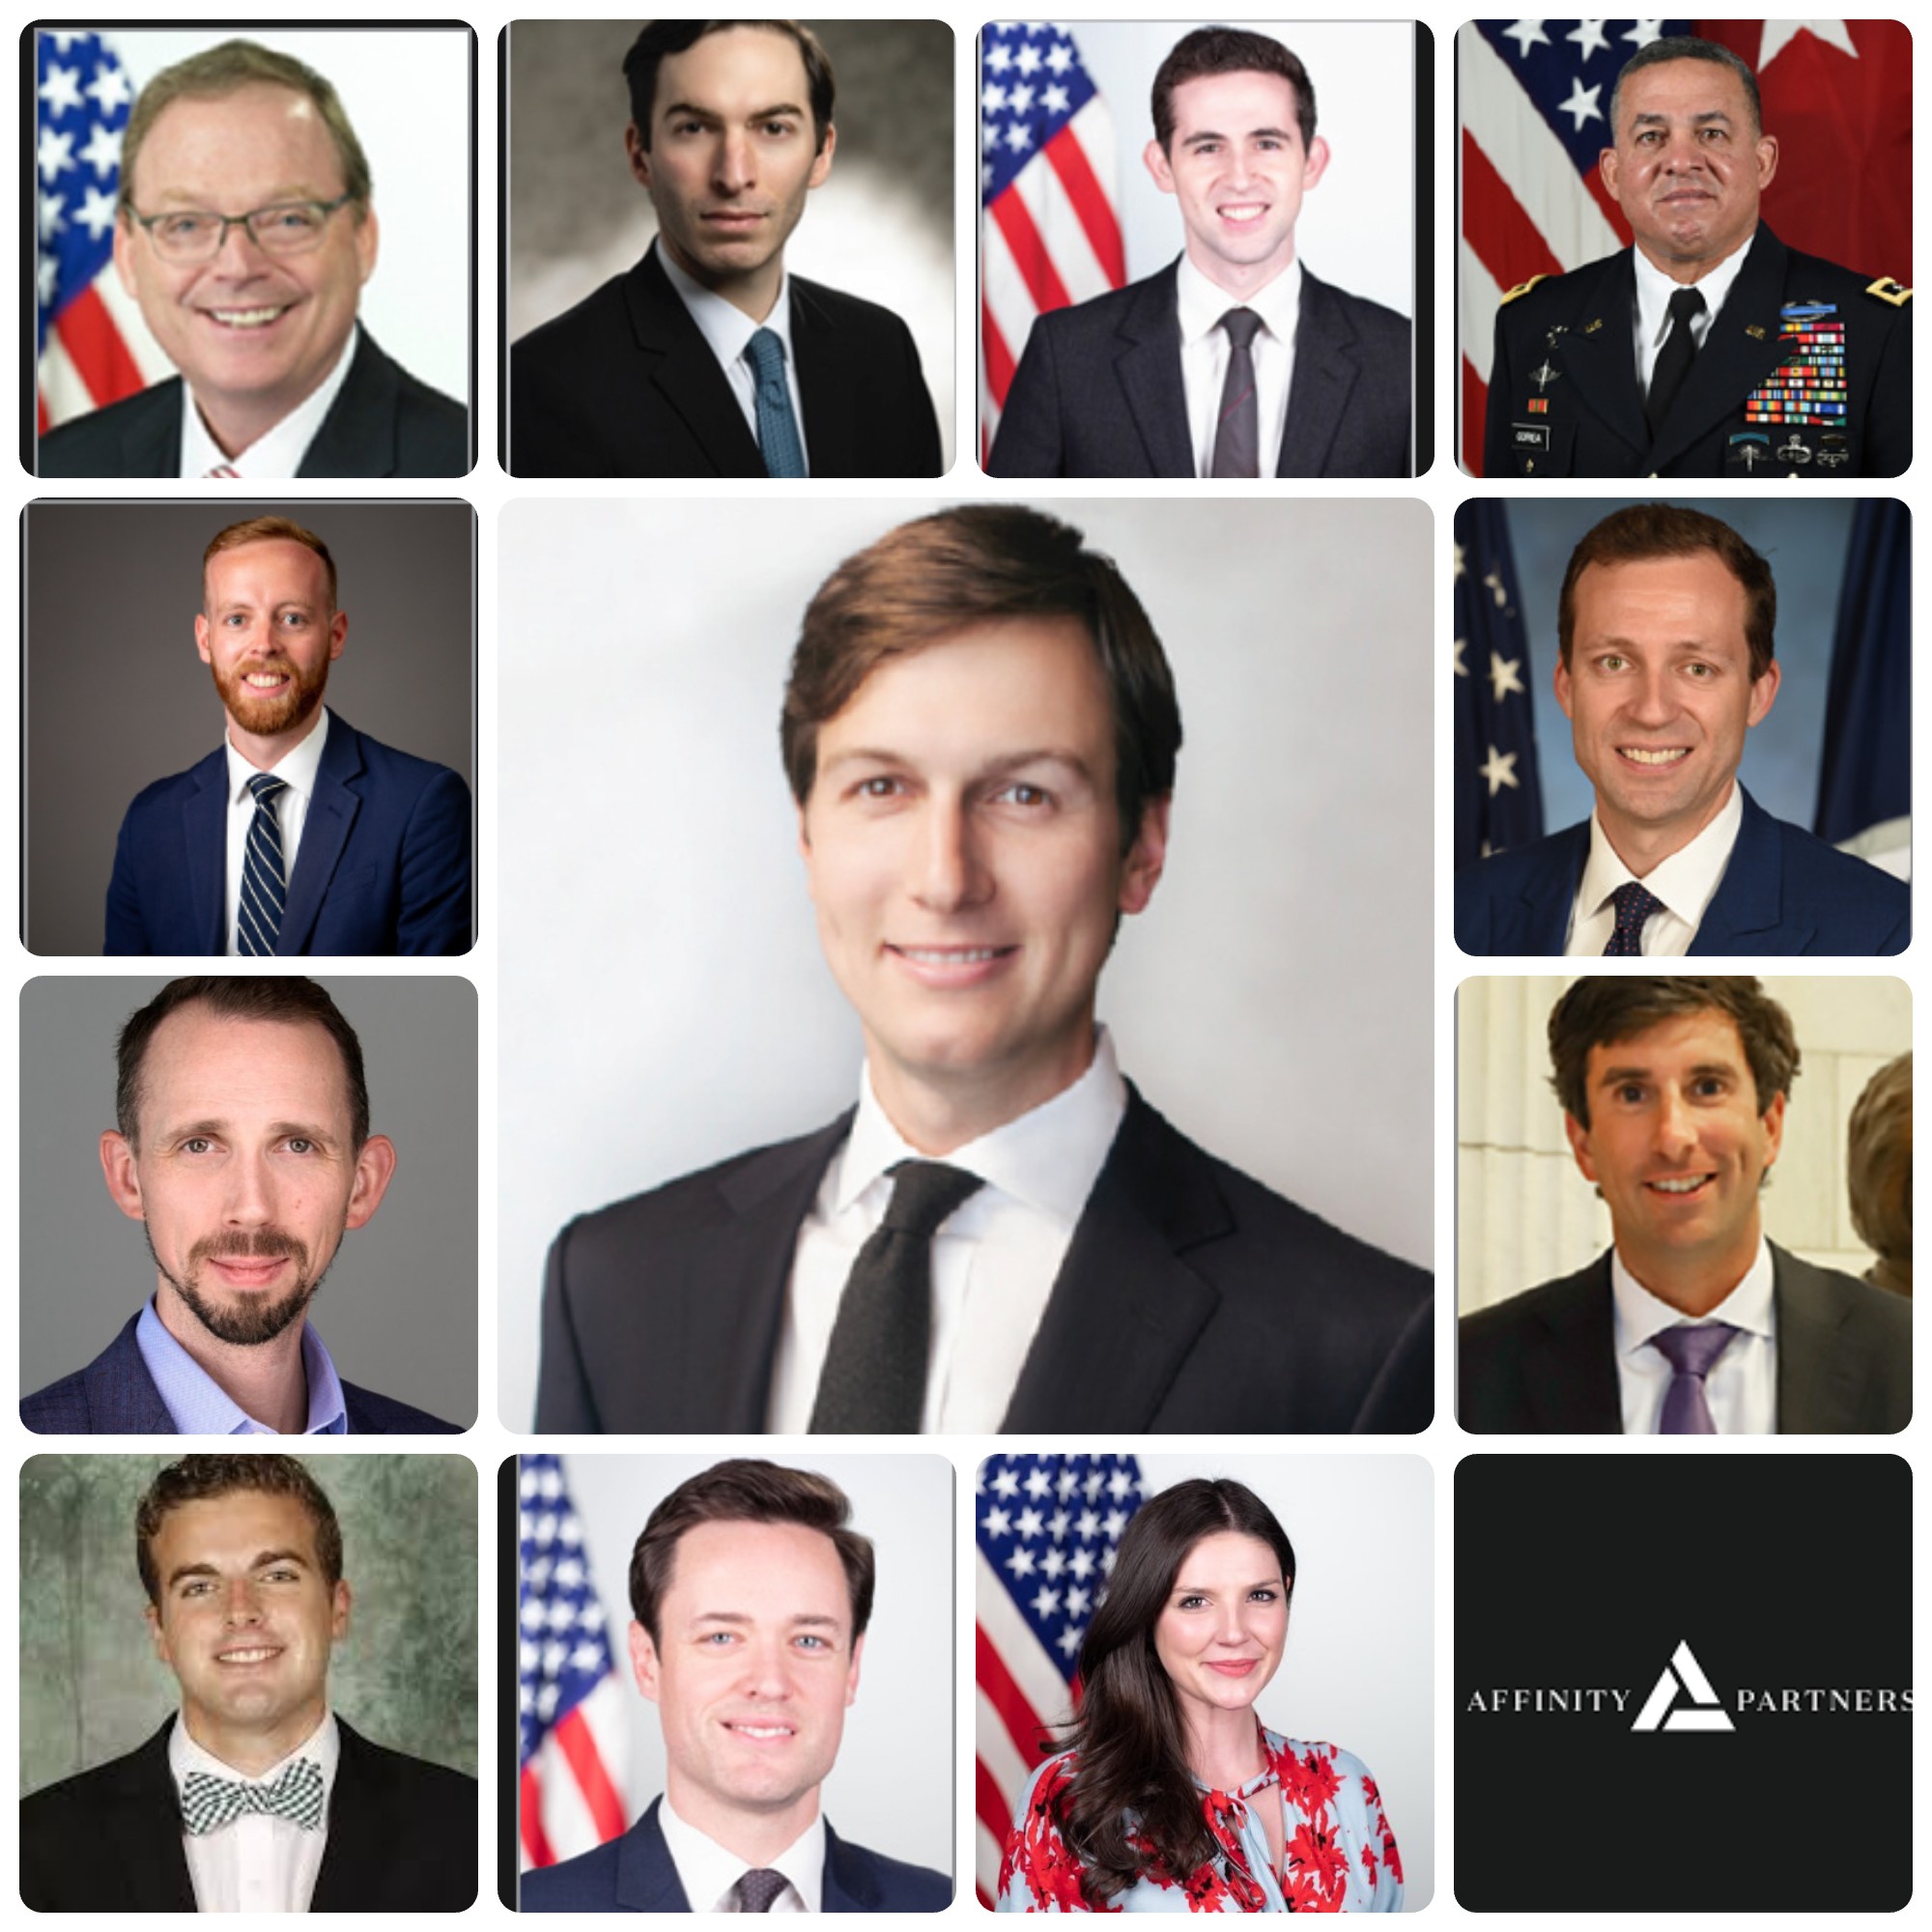 All the ex-president’s men* at Jared Kushner’s Affinity Partners